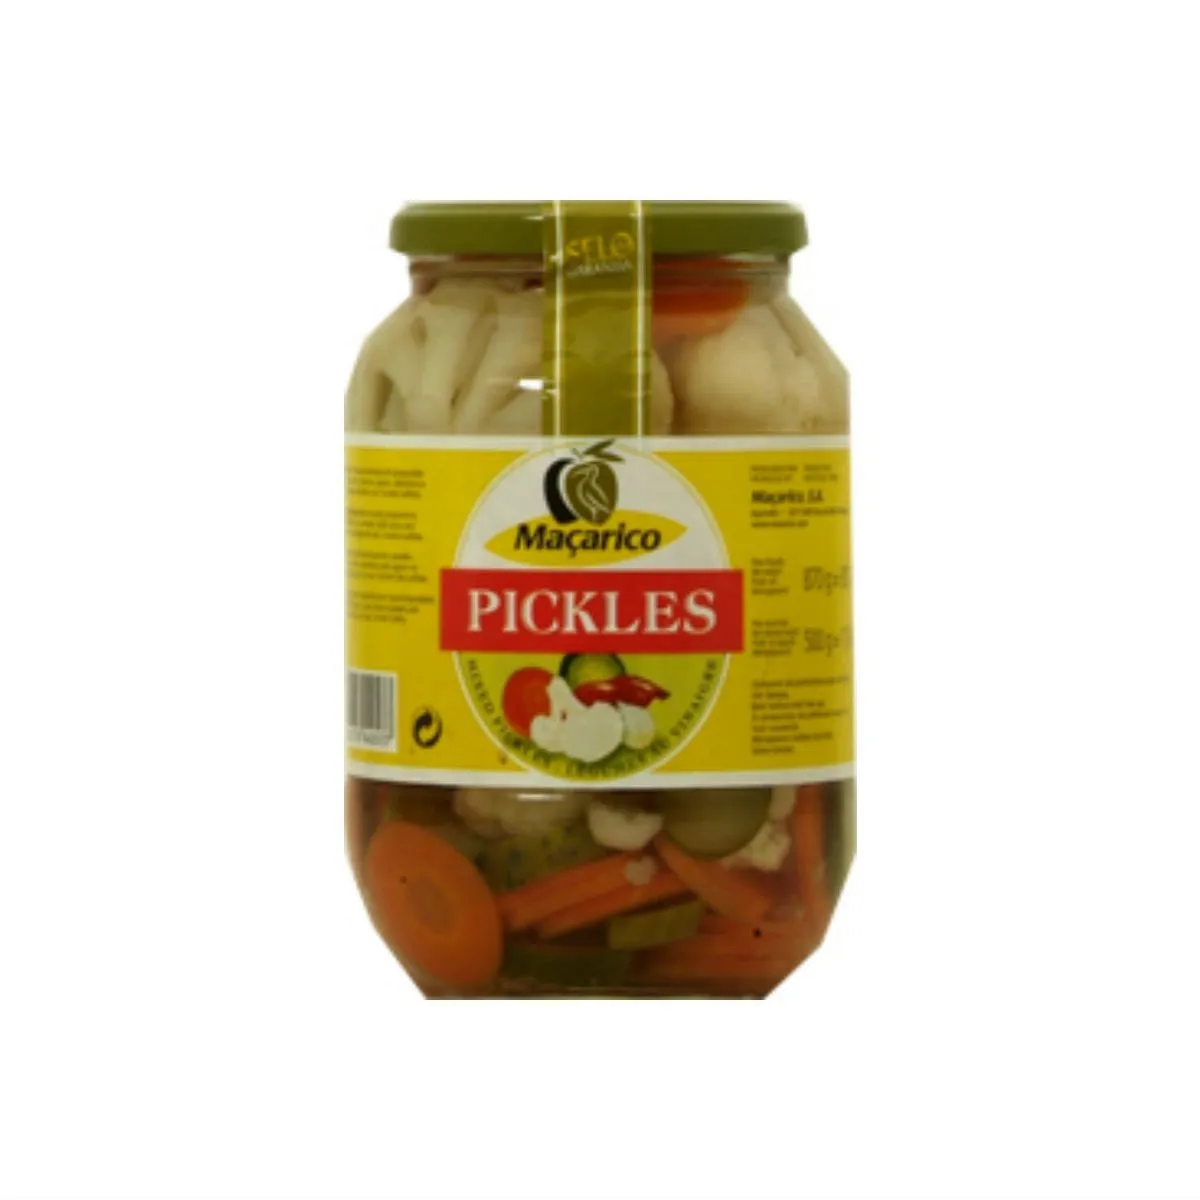 pickles en bocal macarico